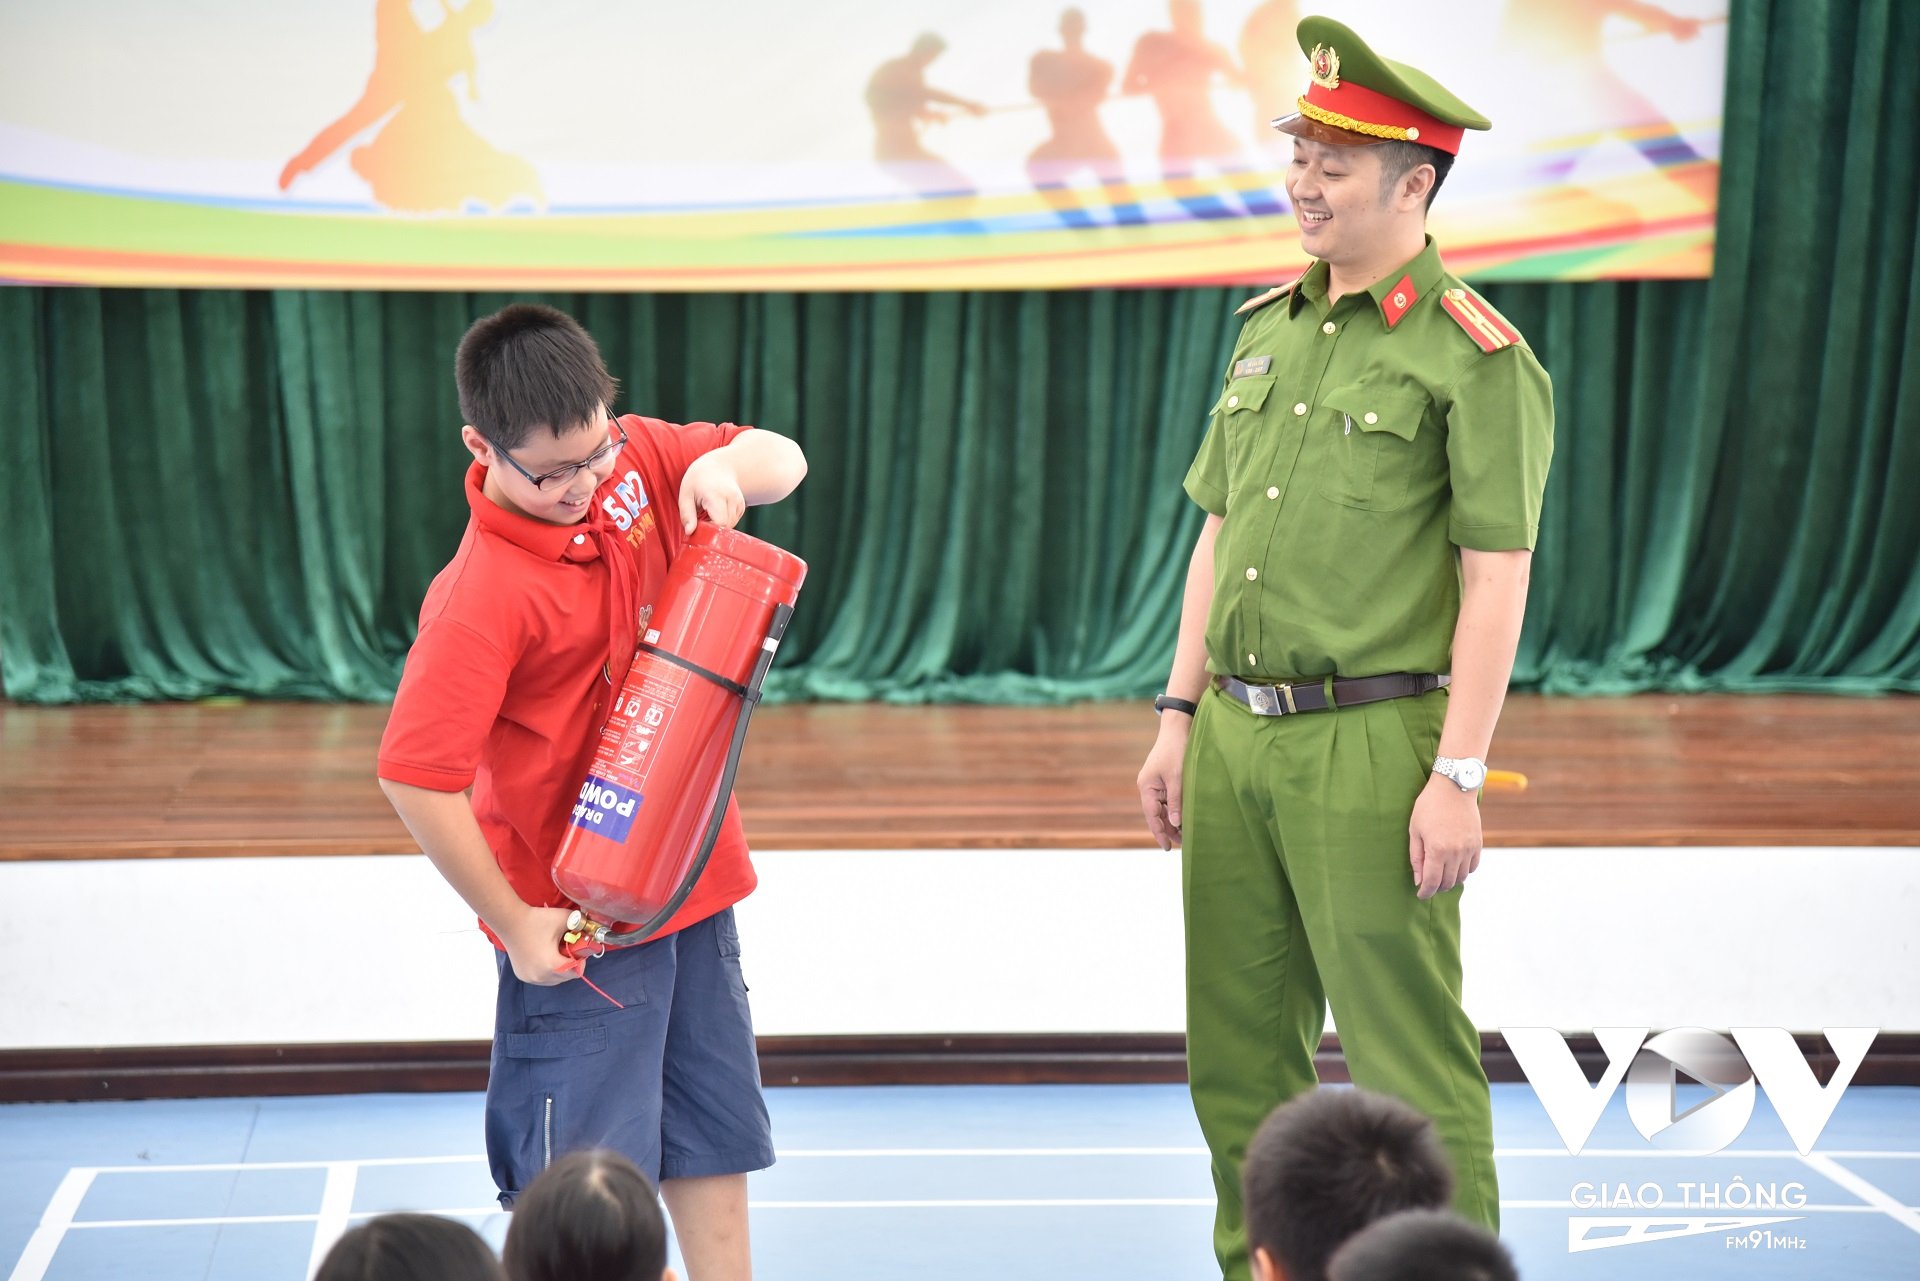 Thiếu tá Vũ Văn Sơn – Cán bộ Đội Cảnh sát PCCC&CNCH Công an quận Hoàng Mai trực tiếp hướng dẫn kỹ năng sử dụng bình chữa cháy cho các em học sinh